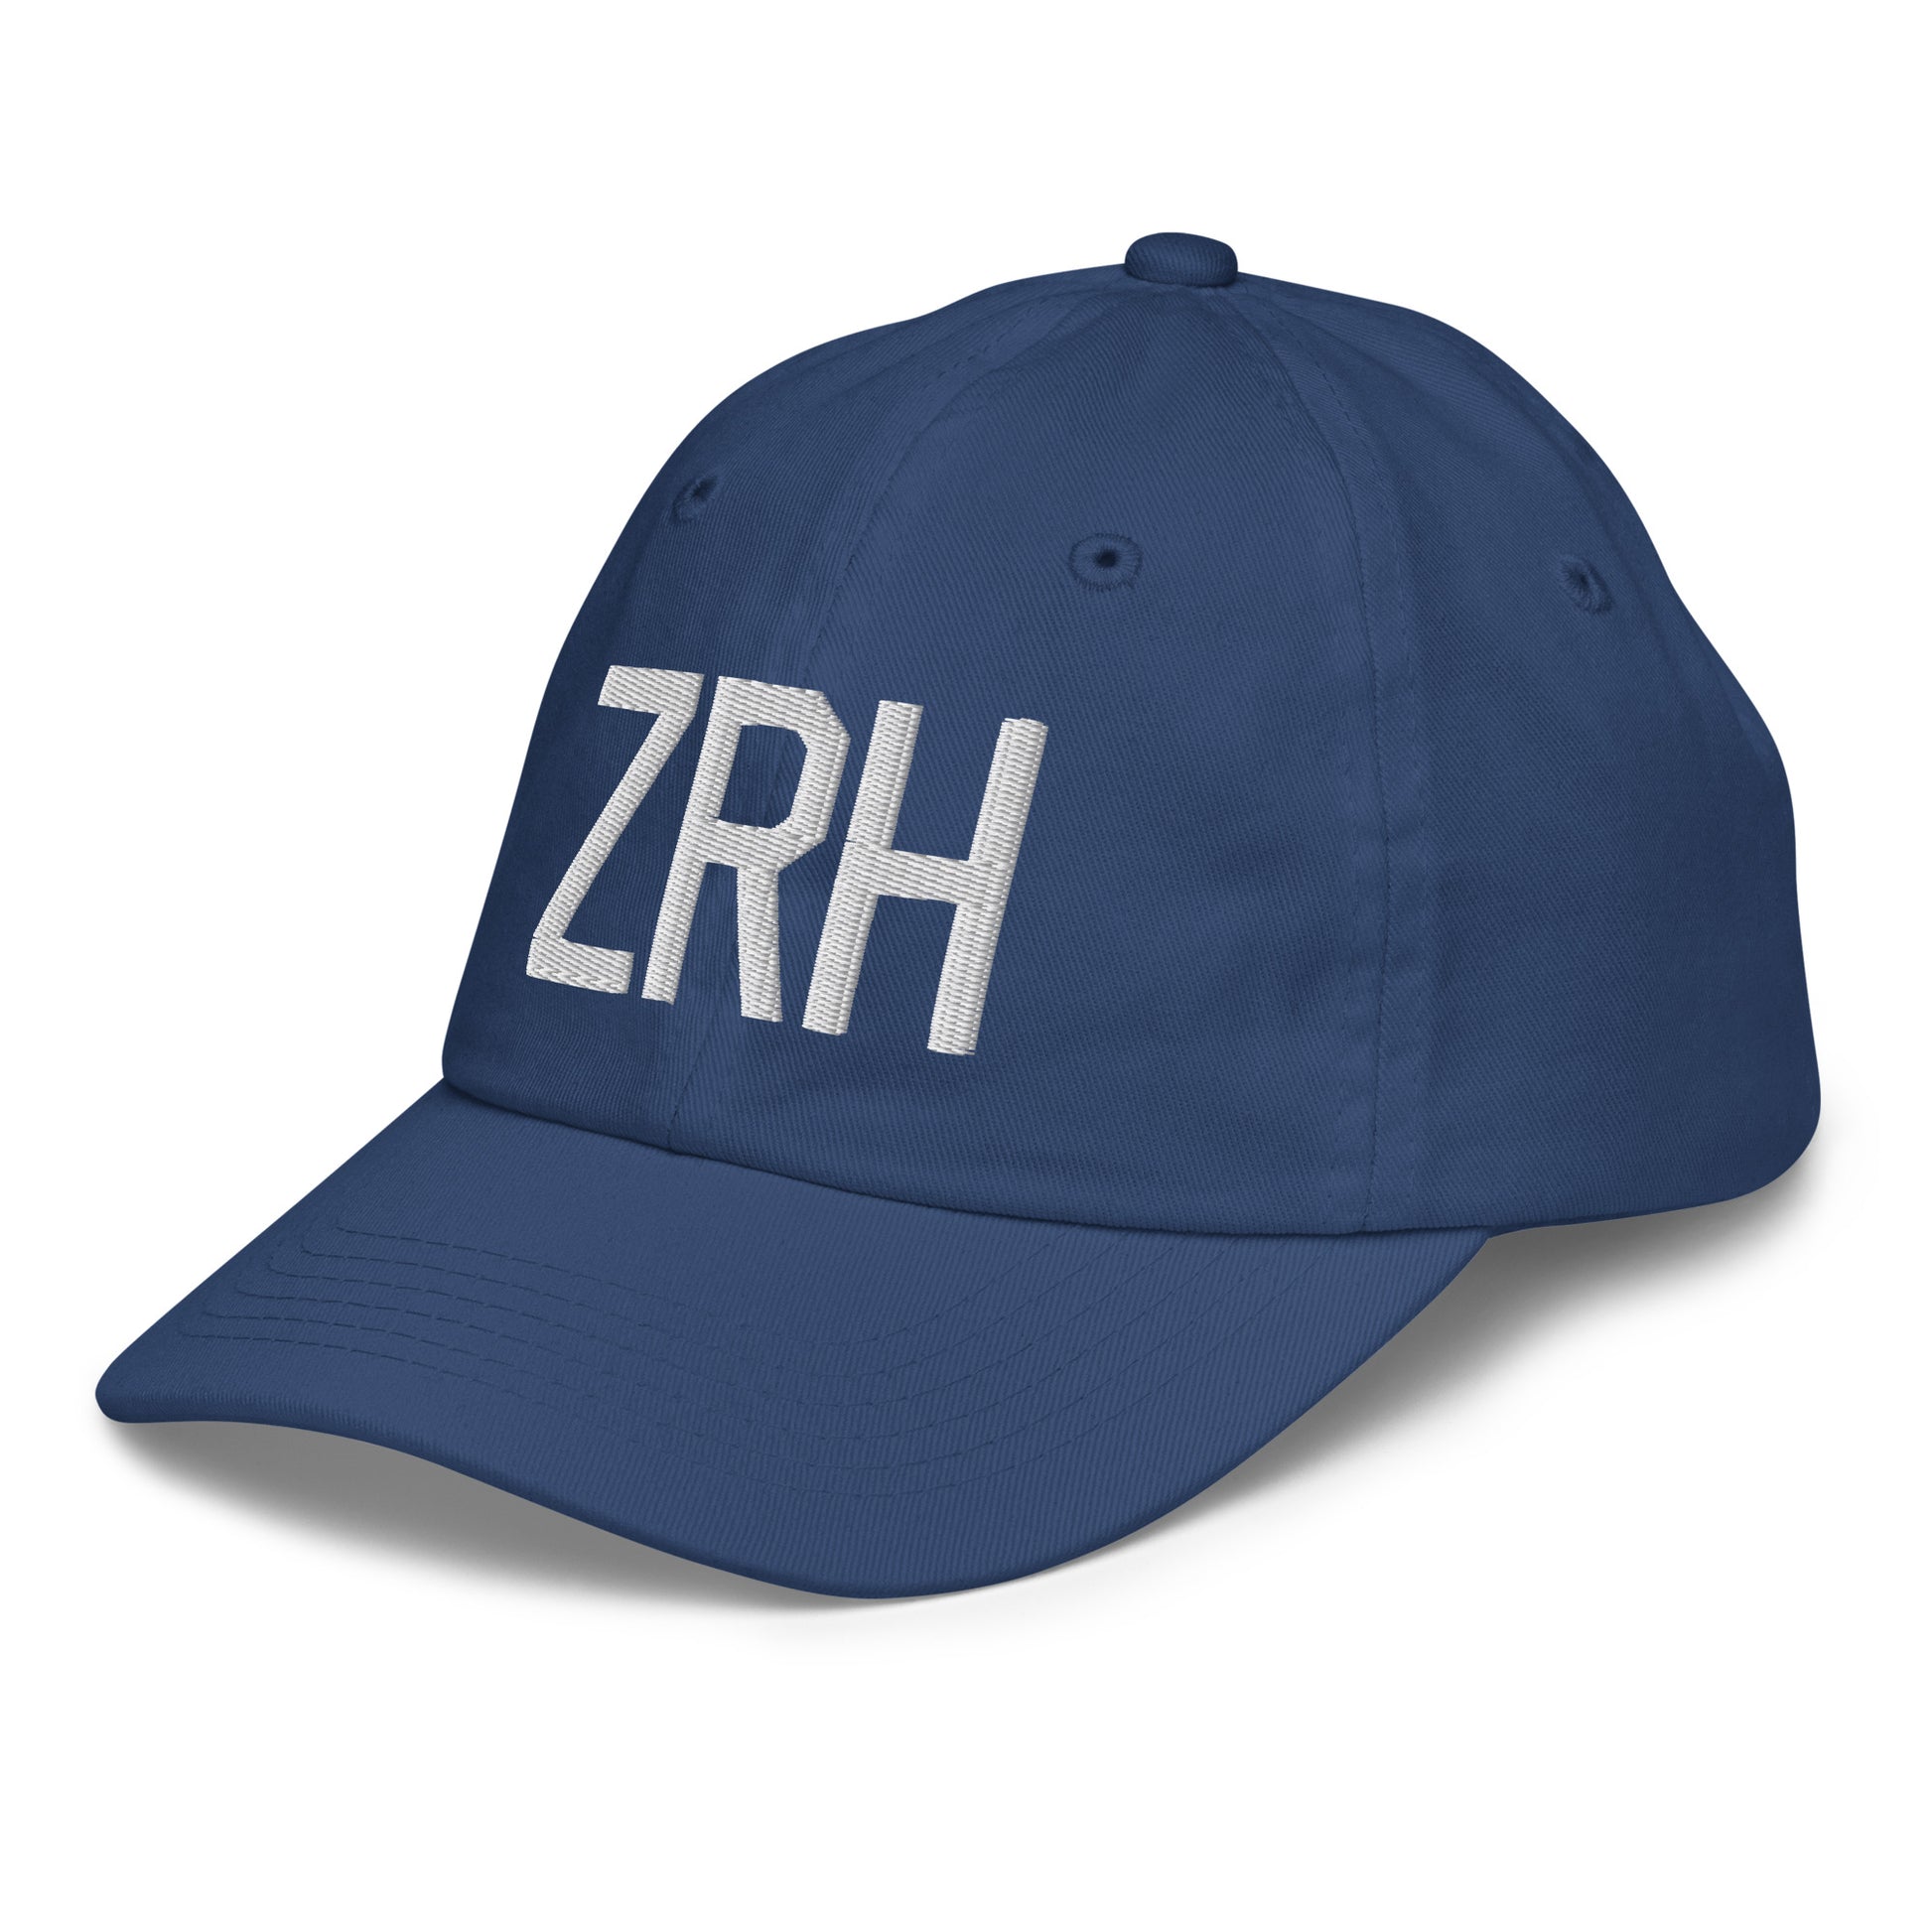 Airport Code Kid's Baseball Cap - White • ZRH Zurich • YHM Designs - Image 01